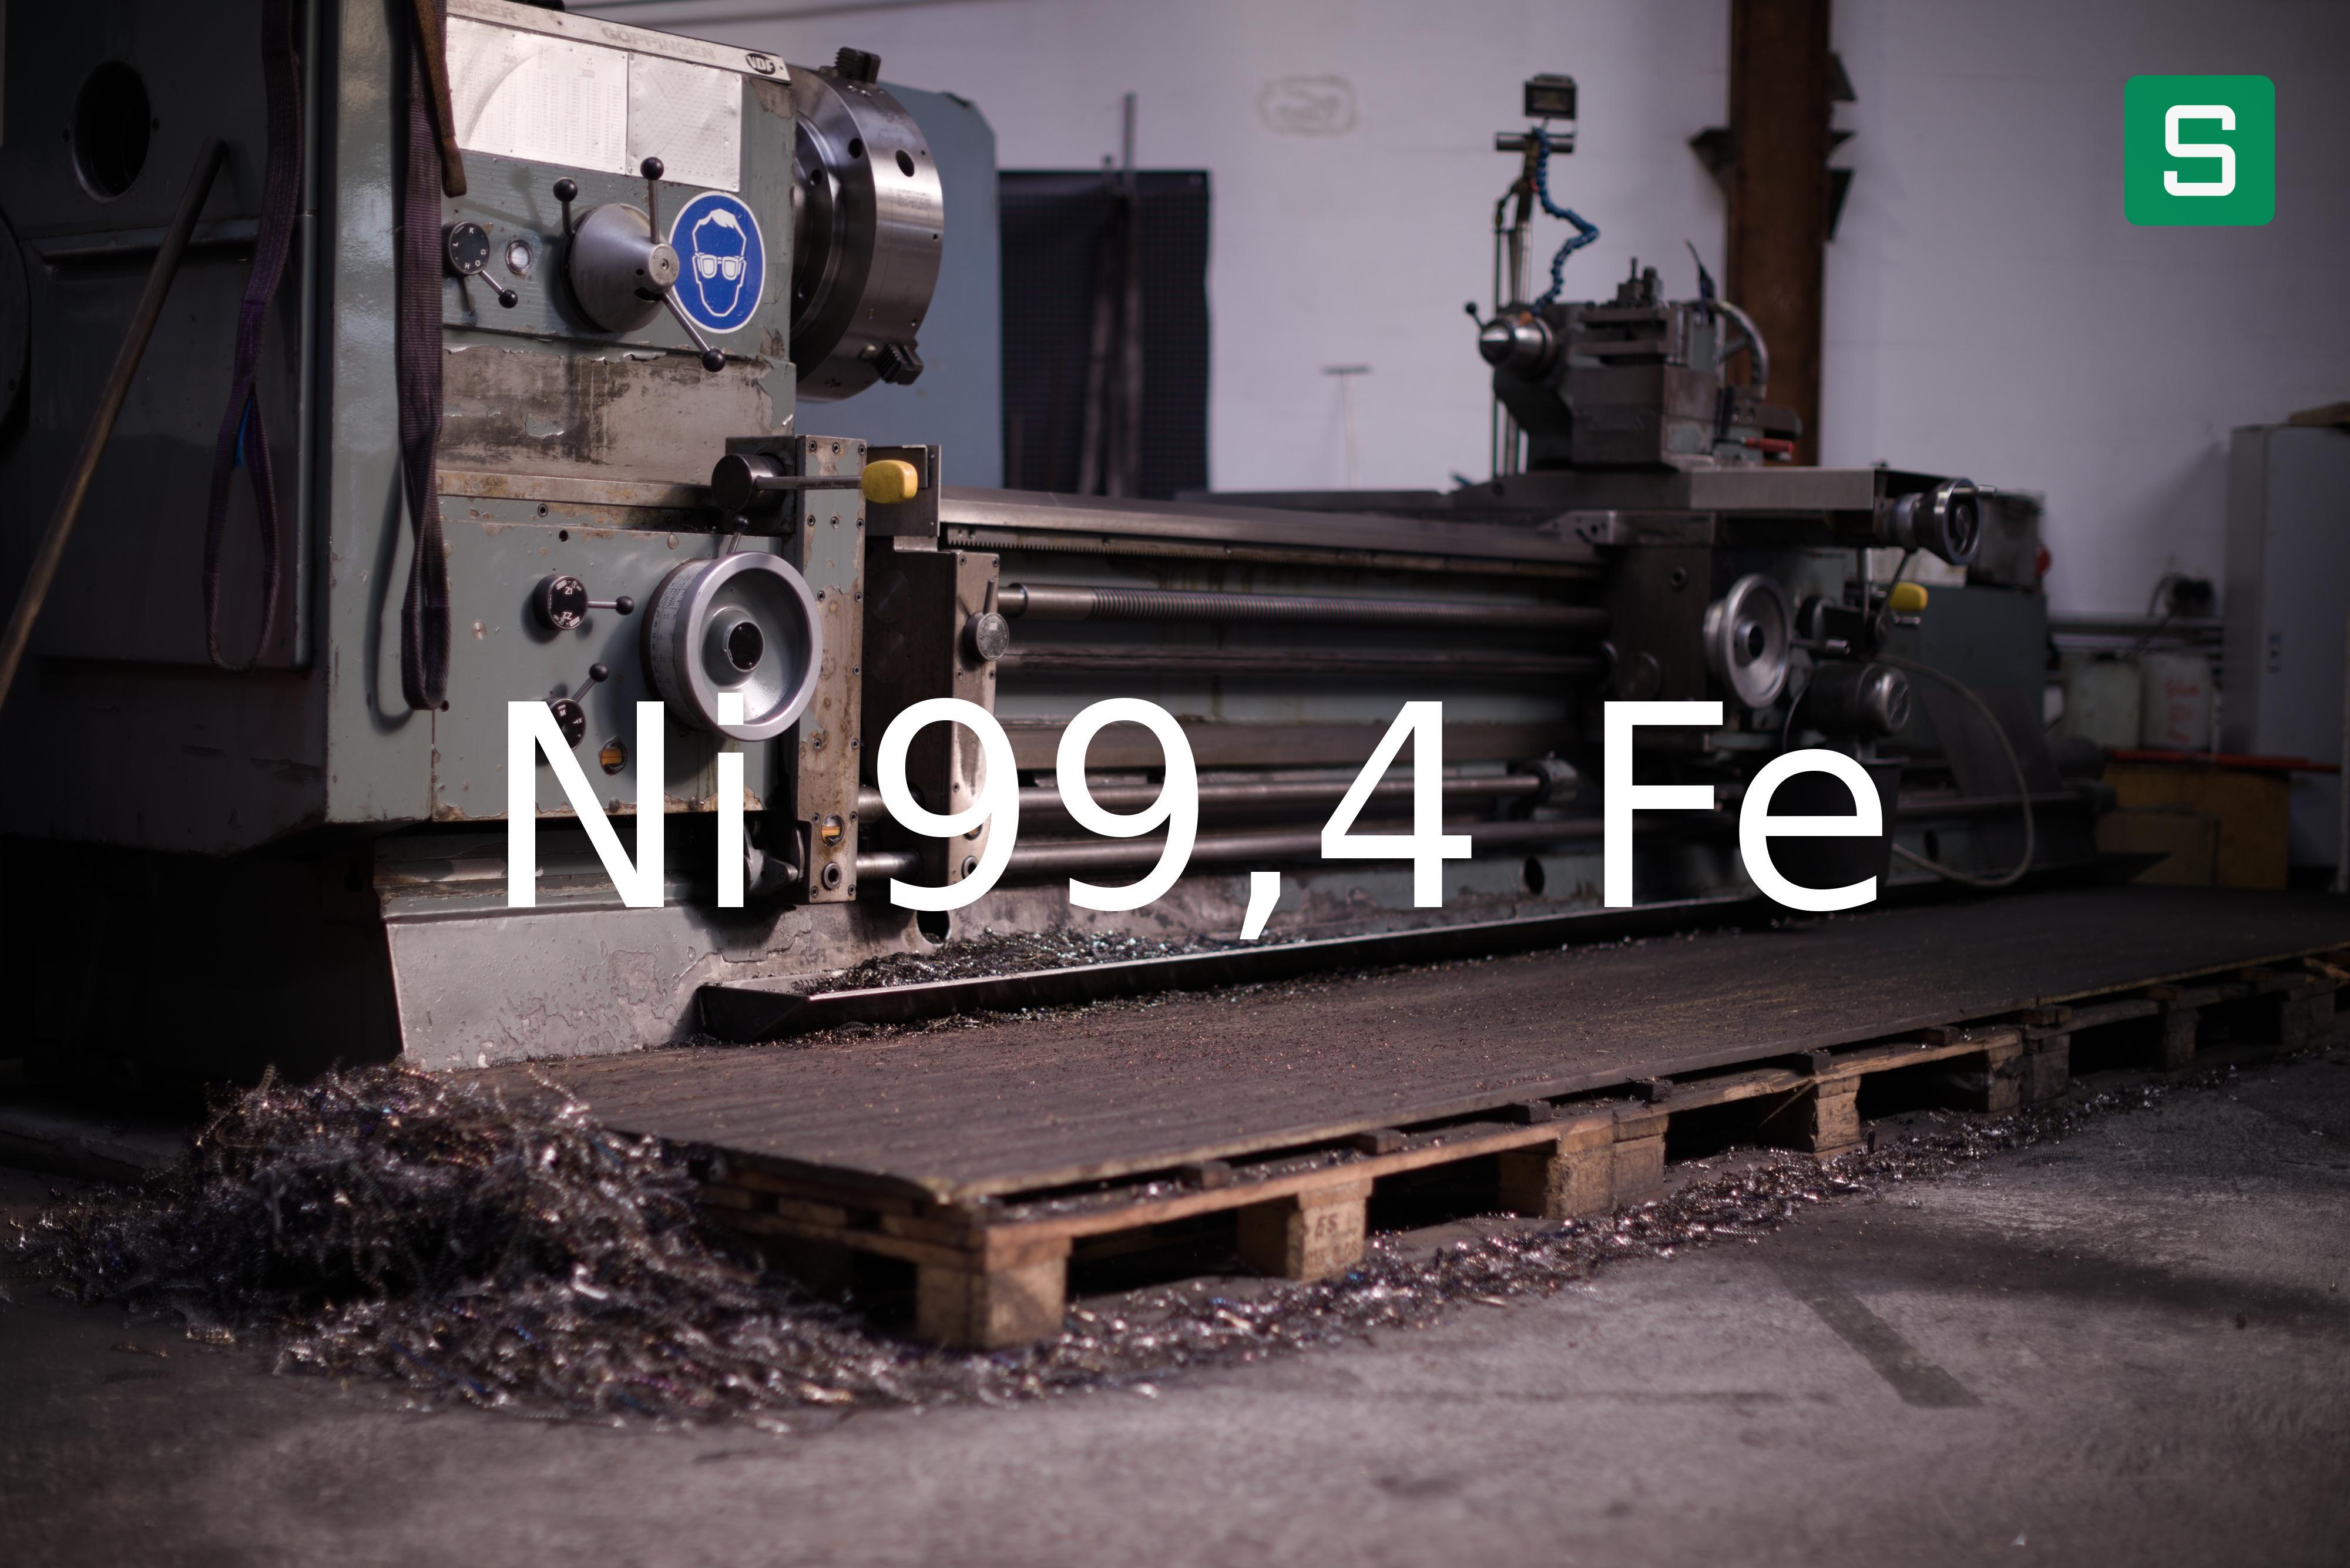 Steel Material: Ni 99,4 Fe